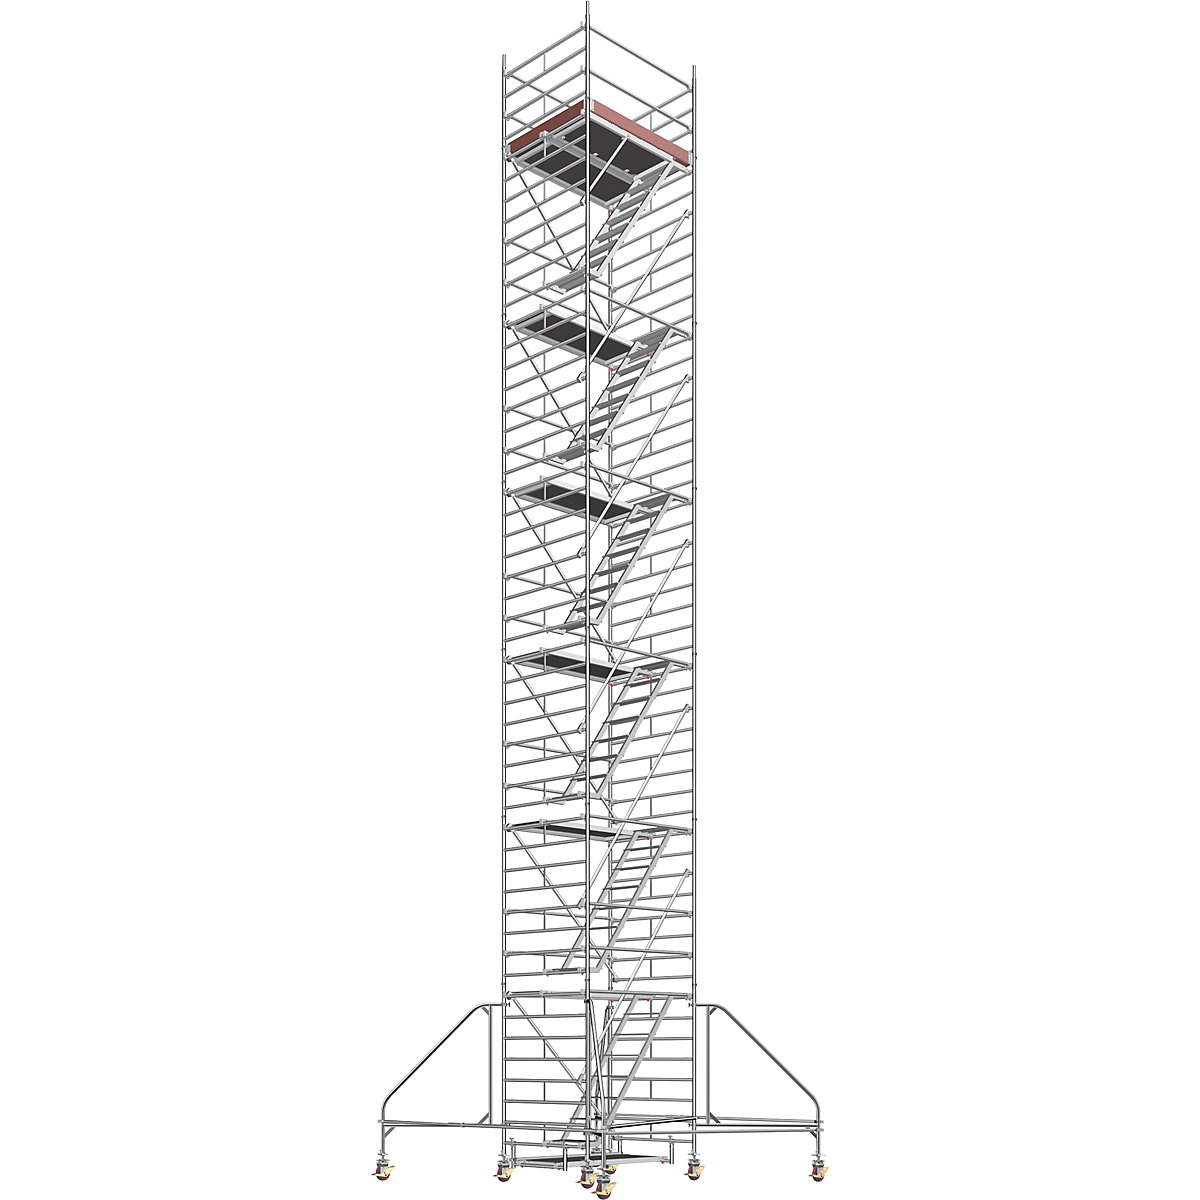 Schelă mobilă universală – Layher, cu scară, platformă 1,80 x 1,50 m, înălțimea schelei 13,43 m-3